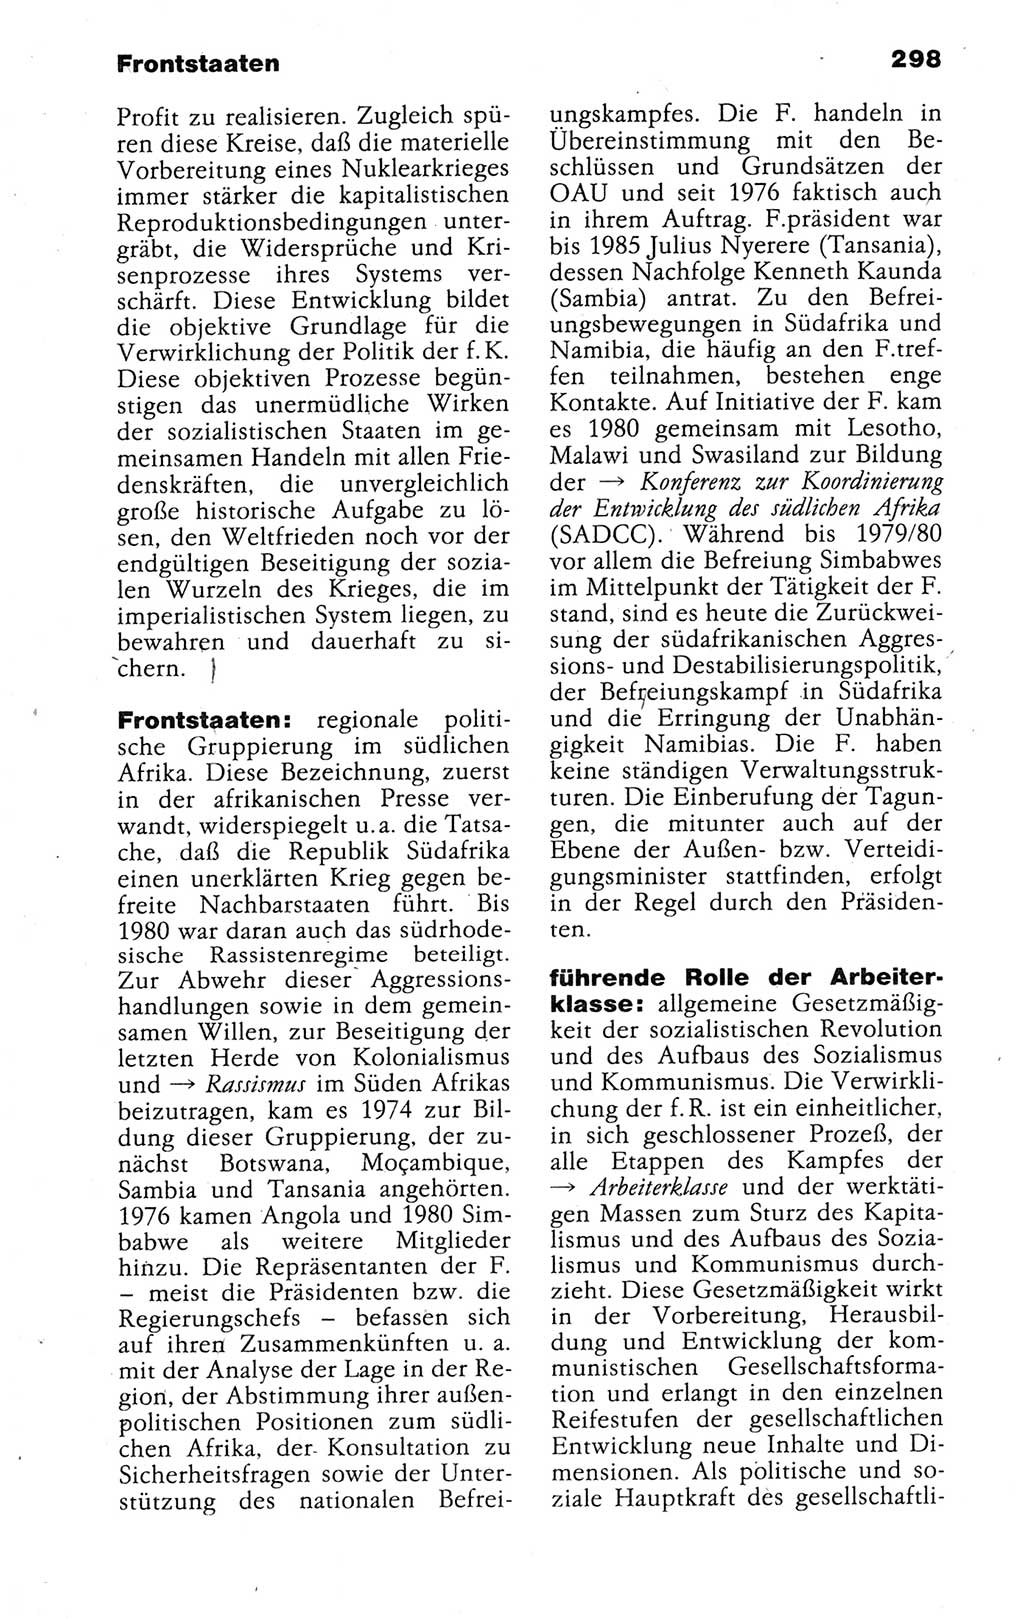 Kleines politisches Wörterbuch [Deutsche Demokratische Republik (DDR)] 1988, Seite 298 (Kl. pol. Wb. DDR 1988, S. 298)